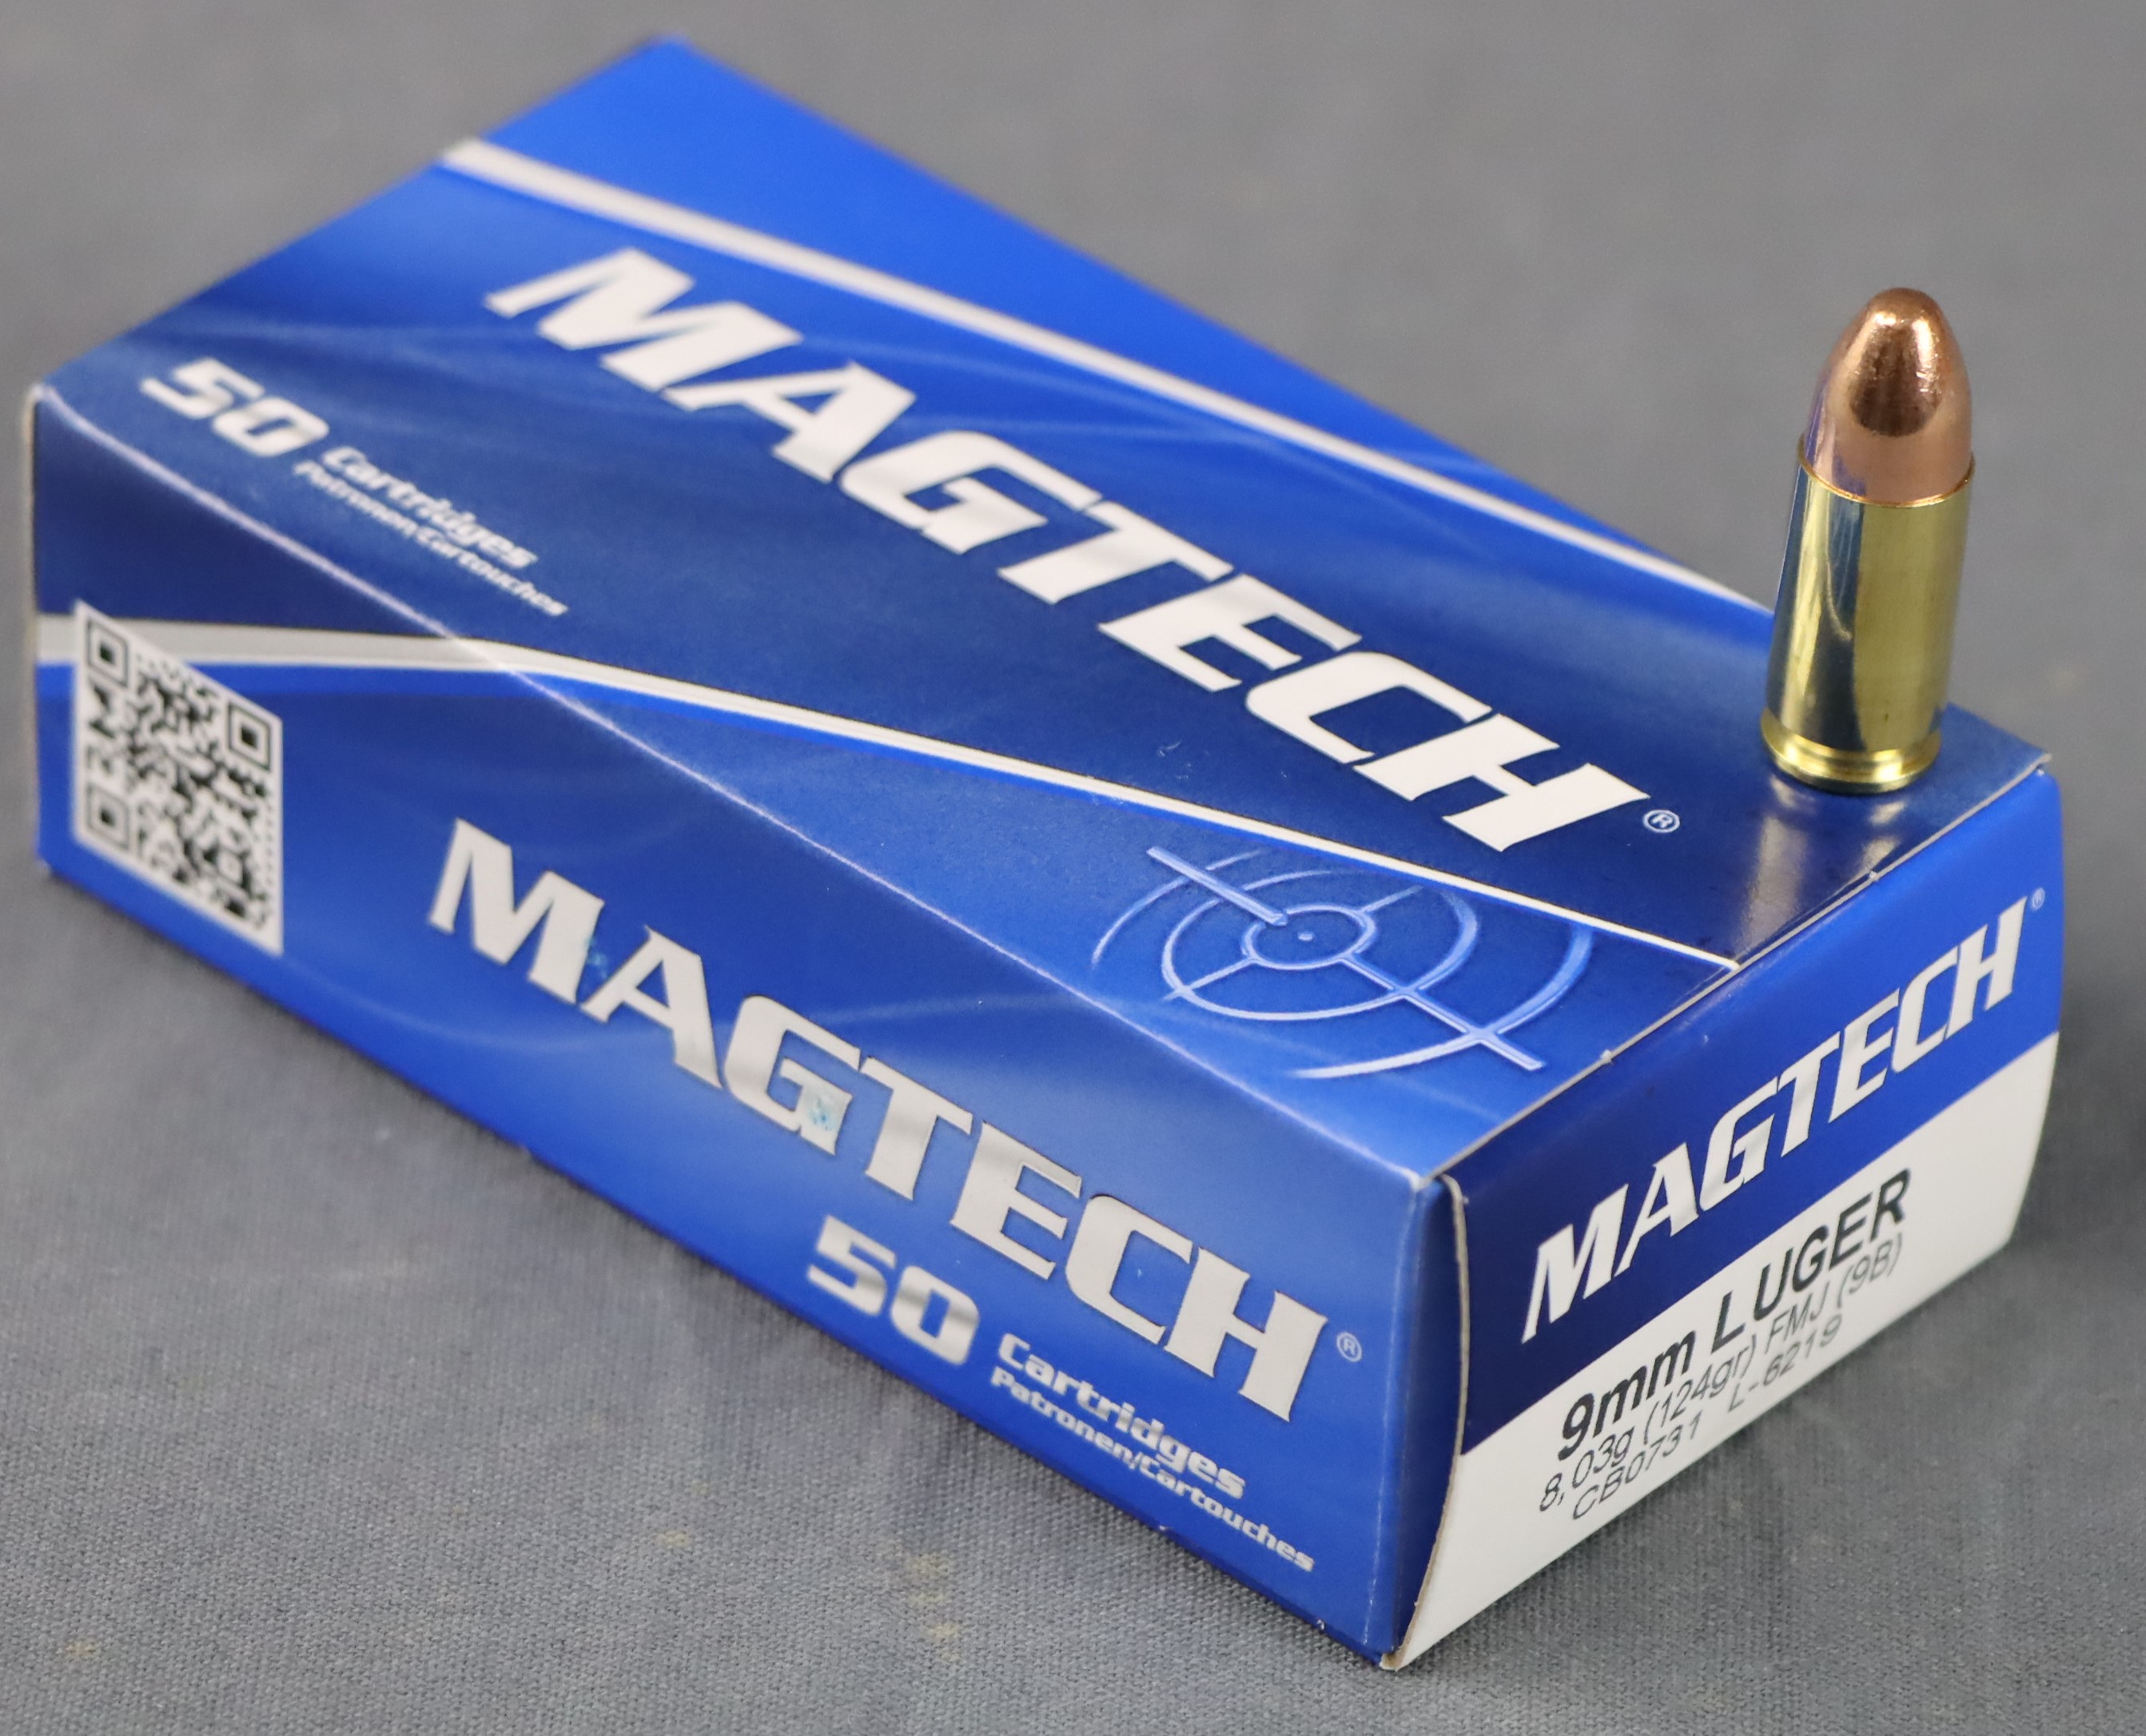 Magtech 9 mm Luger FMJ 124 grs. / 8,03 g. (9B)